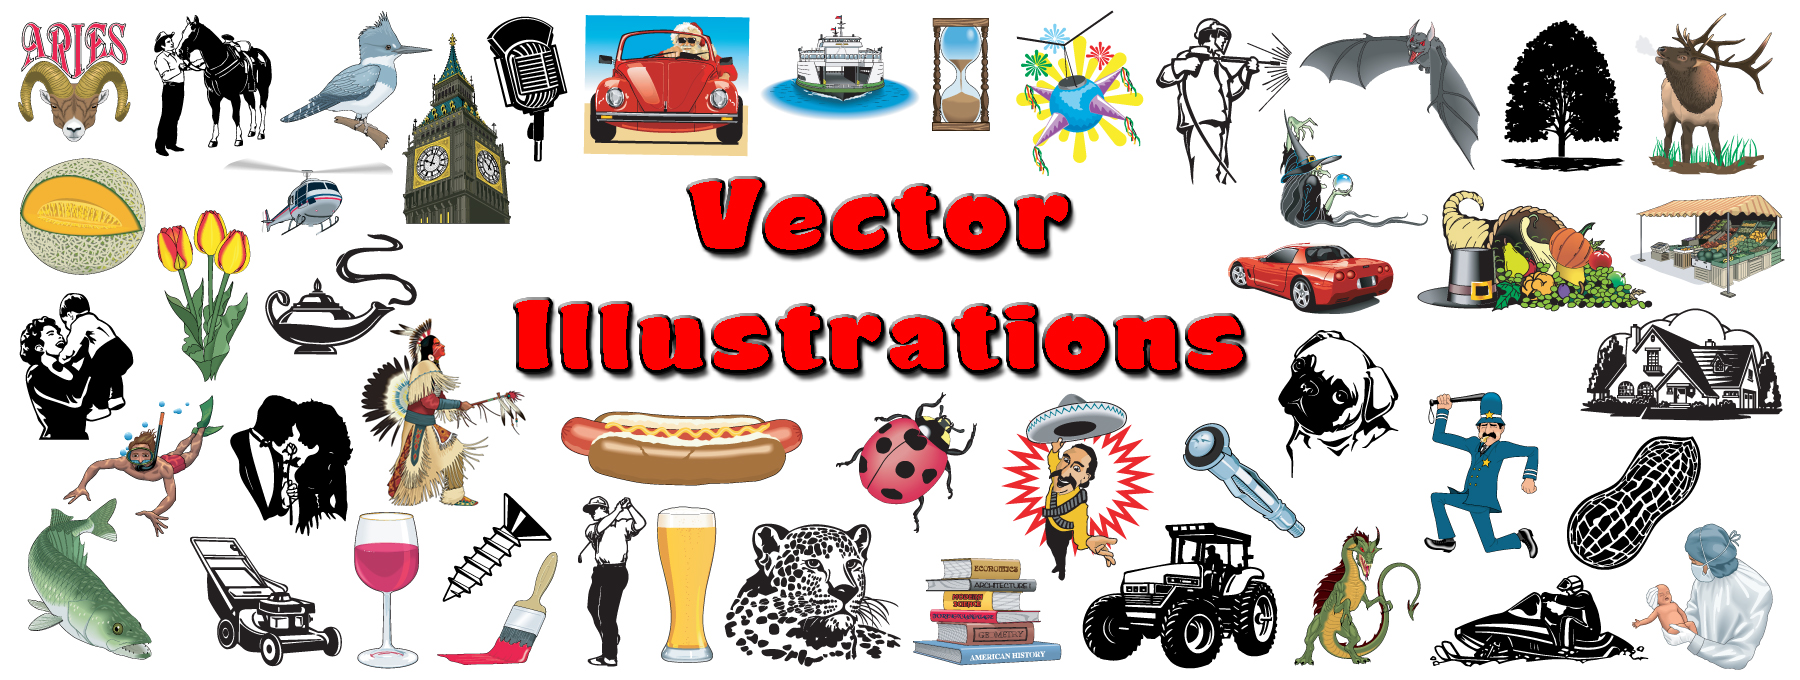 Vector_Illustrations.jpg